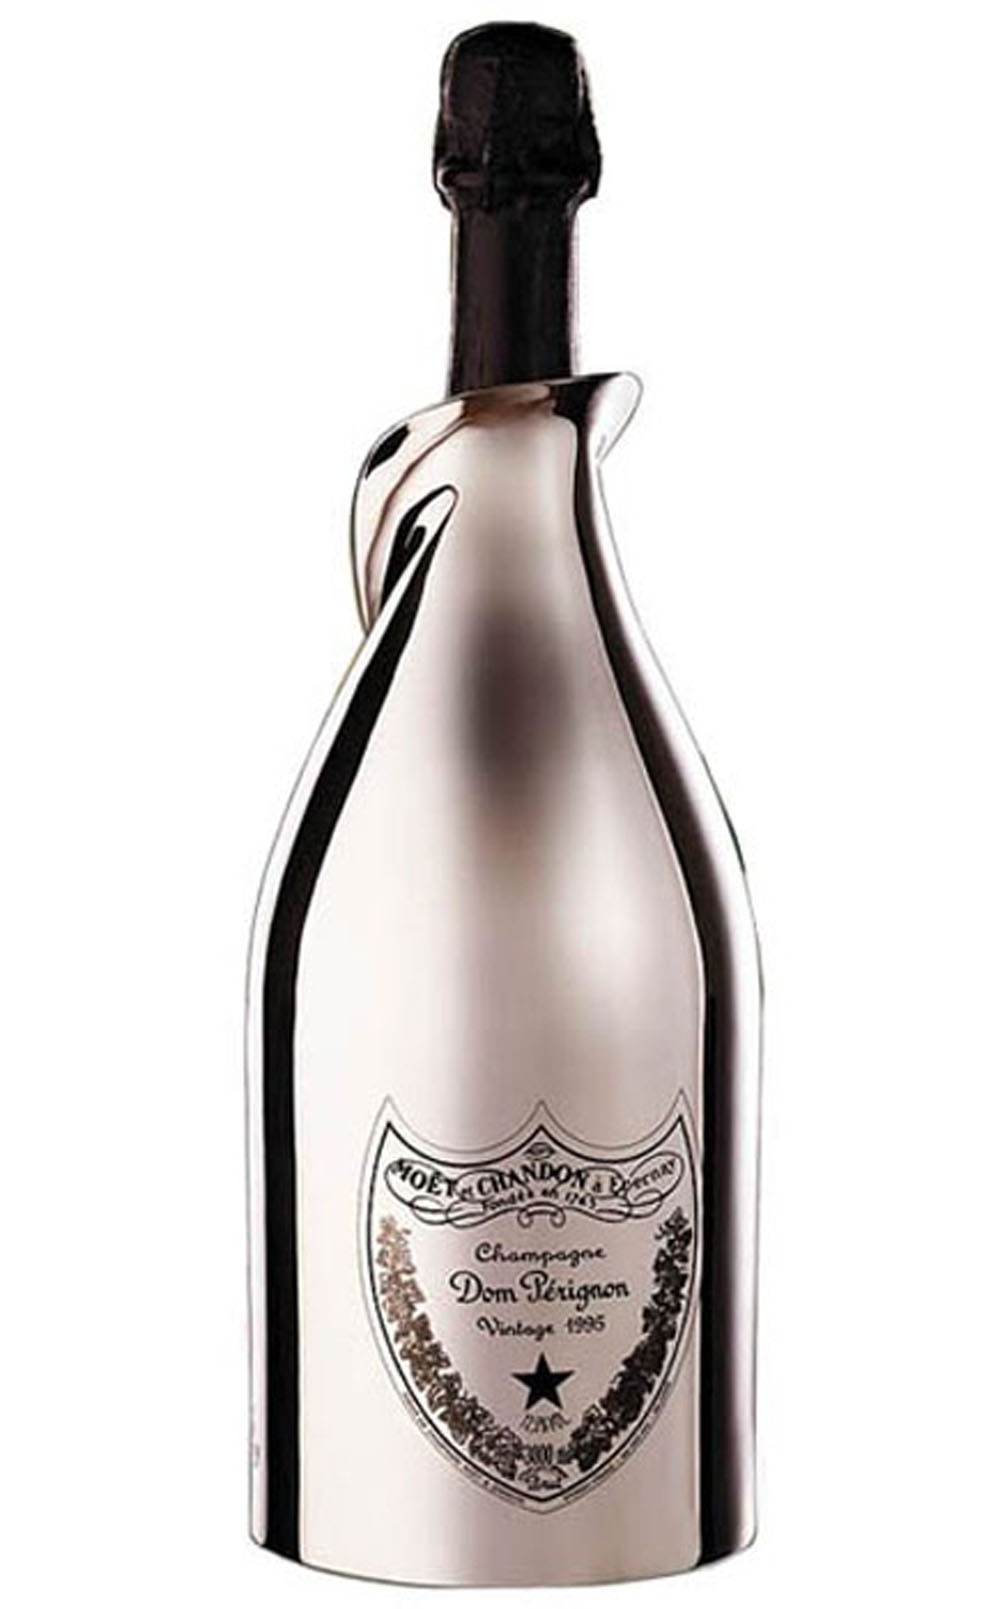 10 самых дорогих бутылок шампанского в мире